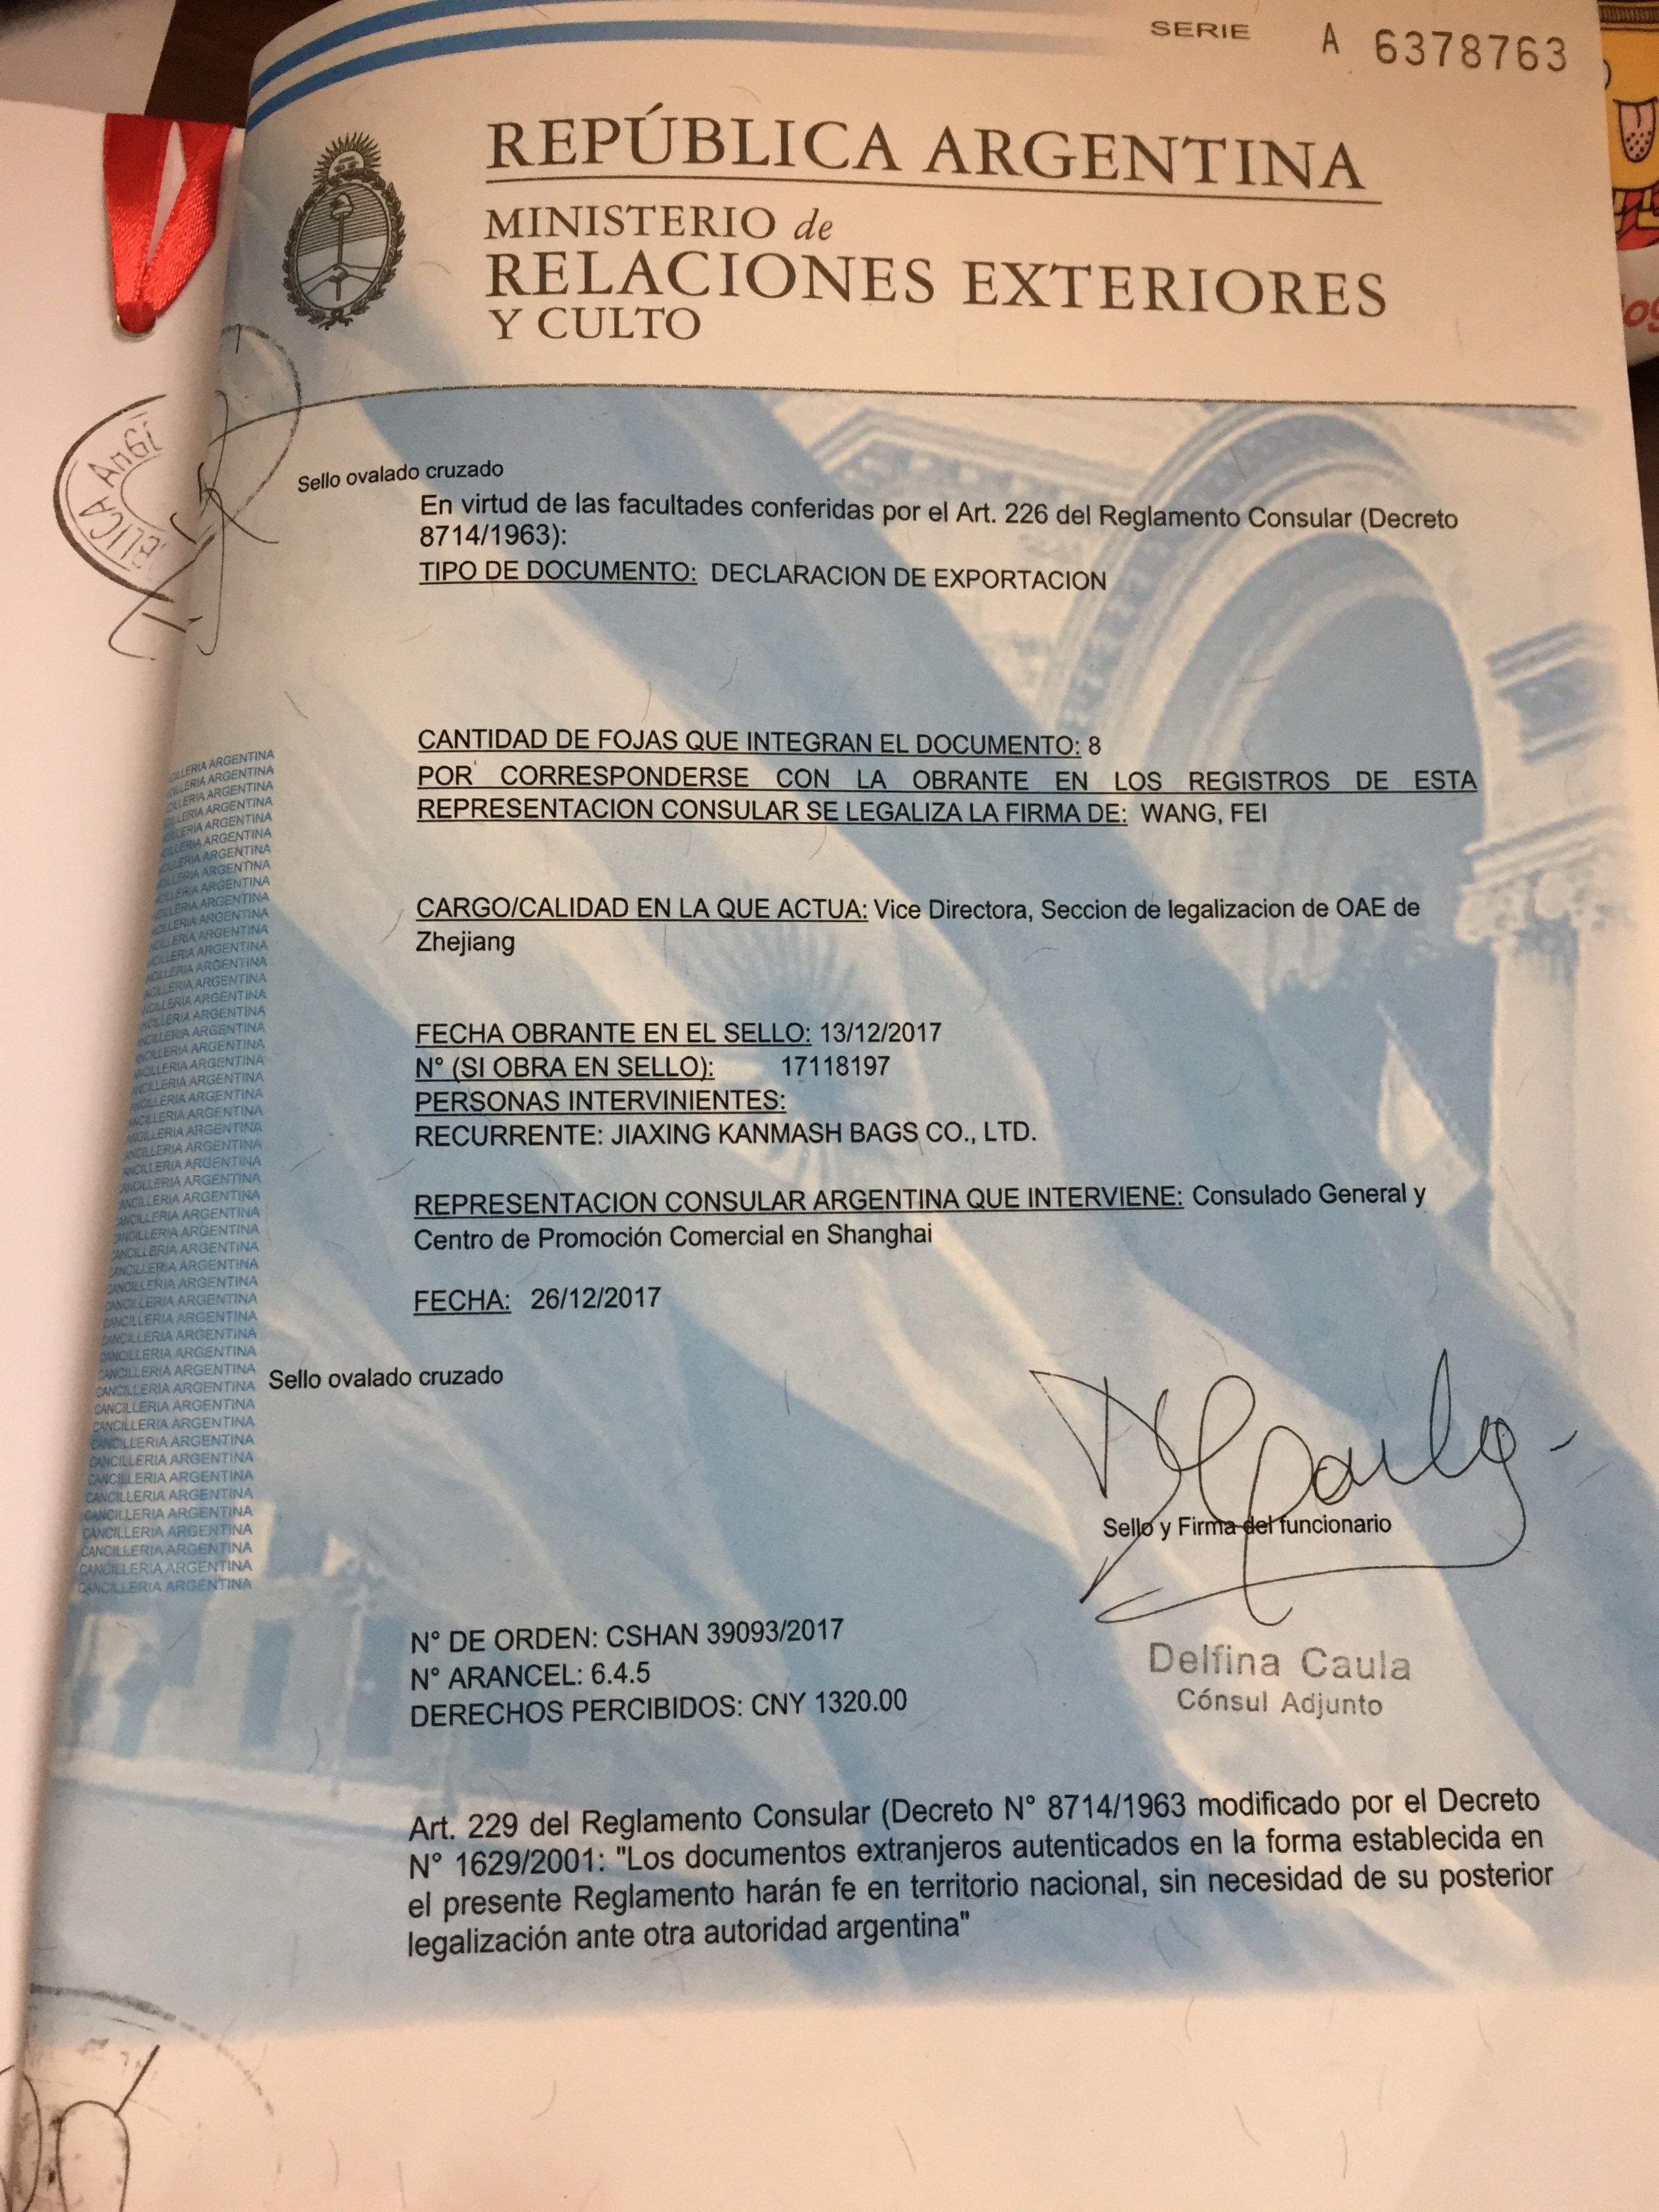 CO加签阿根廷使馆印章